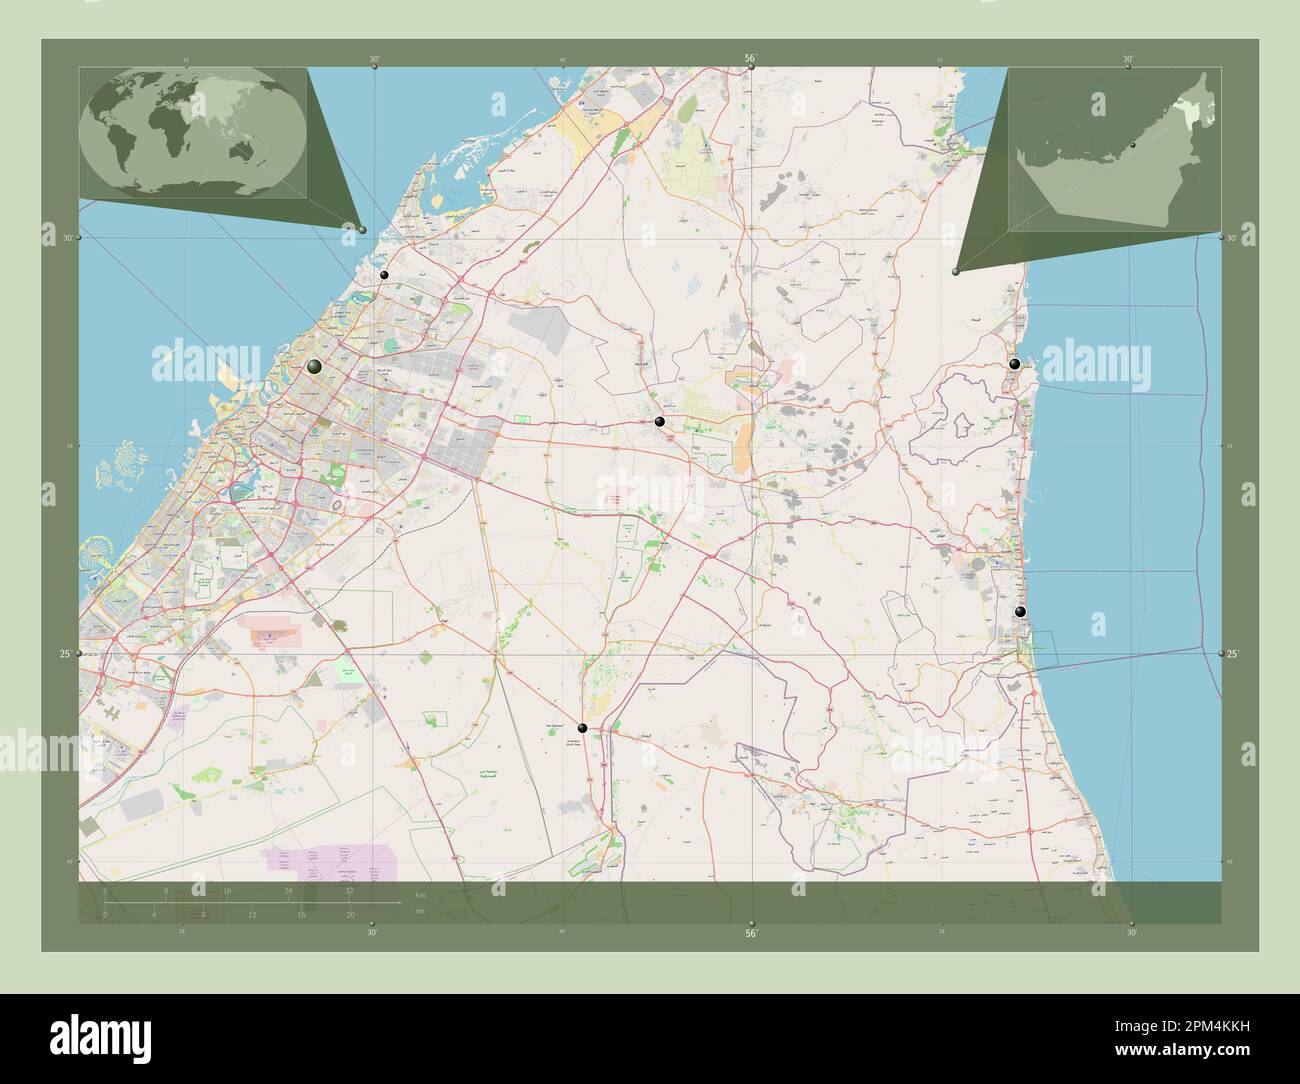 Sharjah, emirato degli Emirati Arabi Uniti. Aprire la mappa stradale. Posizioni delle principali città della regione. Mappe delle posizioni ausiliarie degli angoli Foto Stock